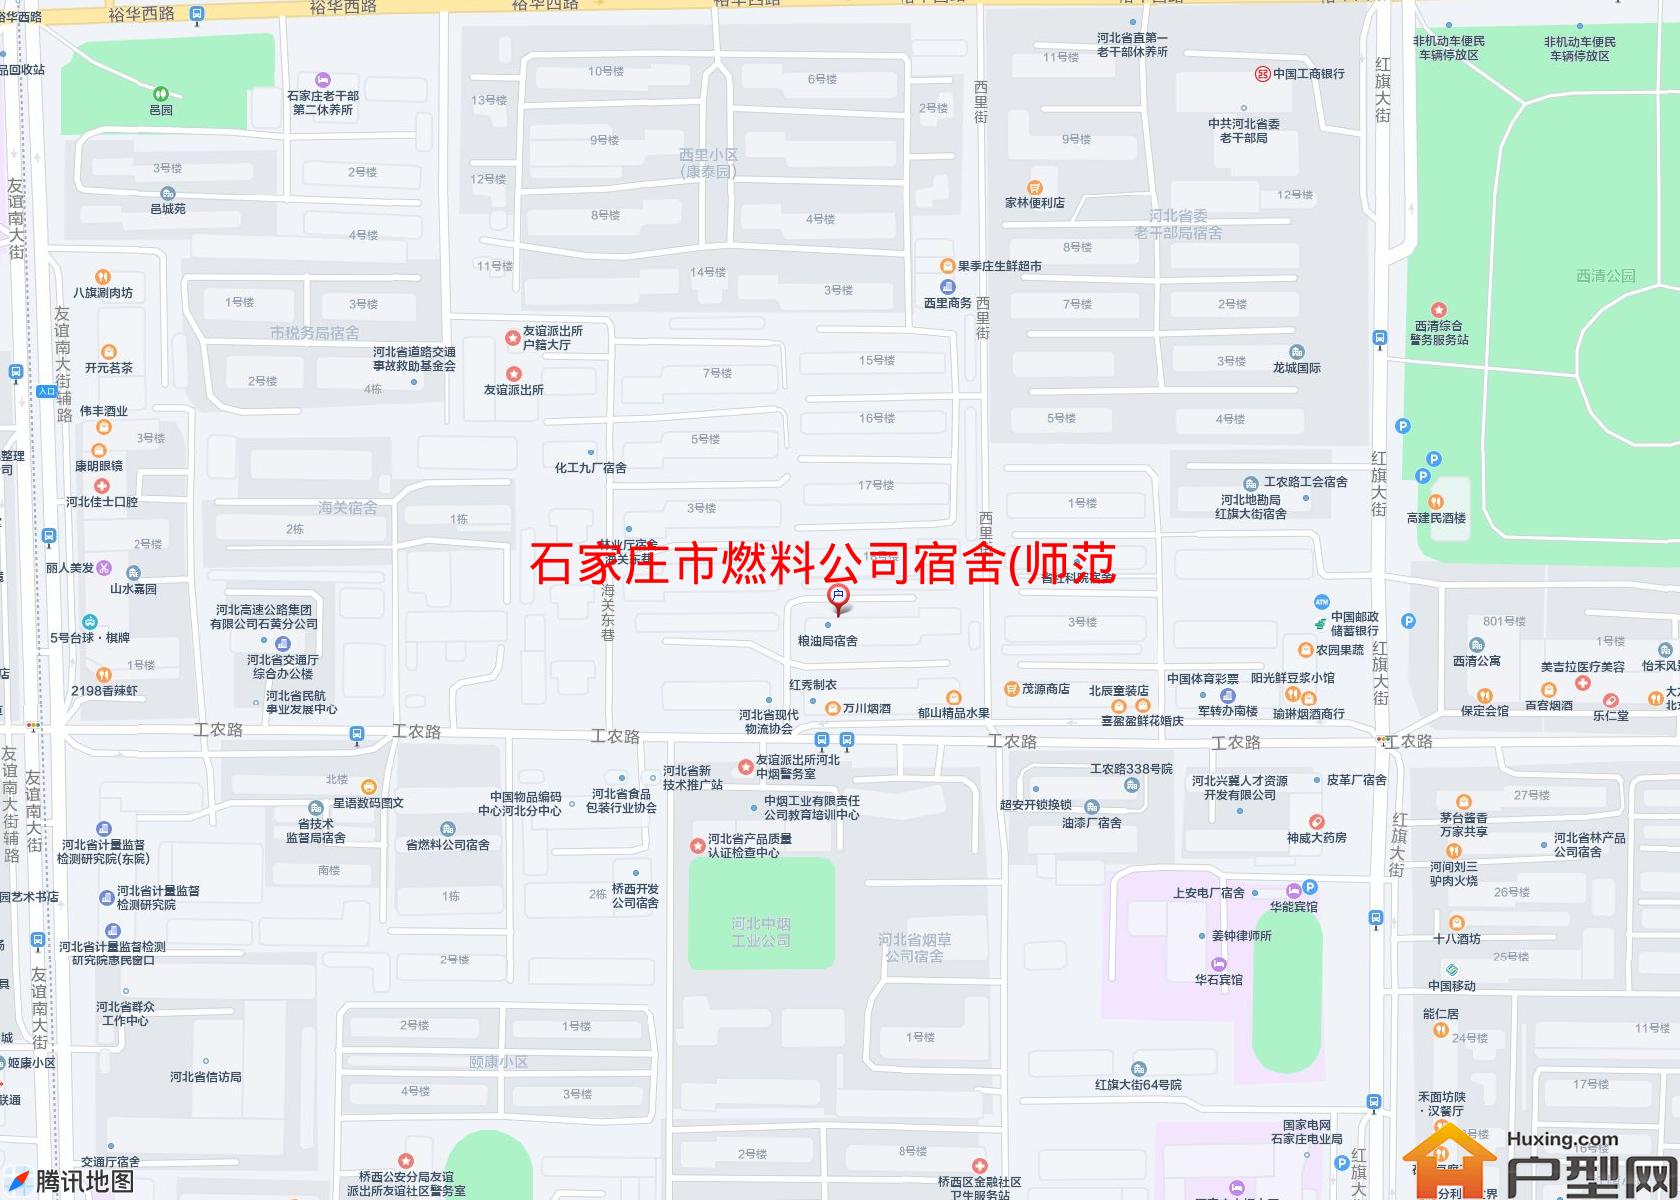 燃料公司宿舍(师范街)小区 - 户型网